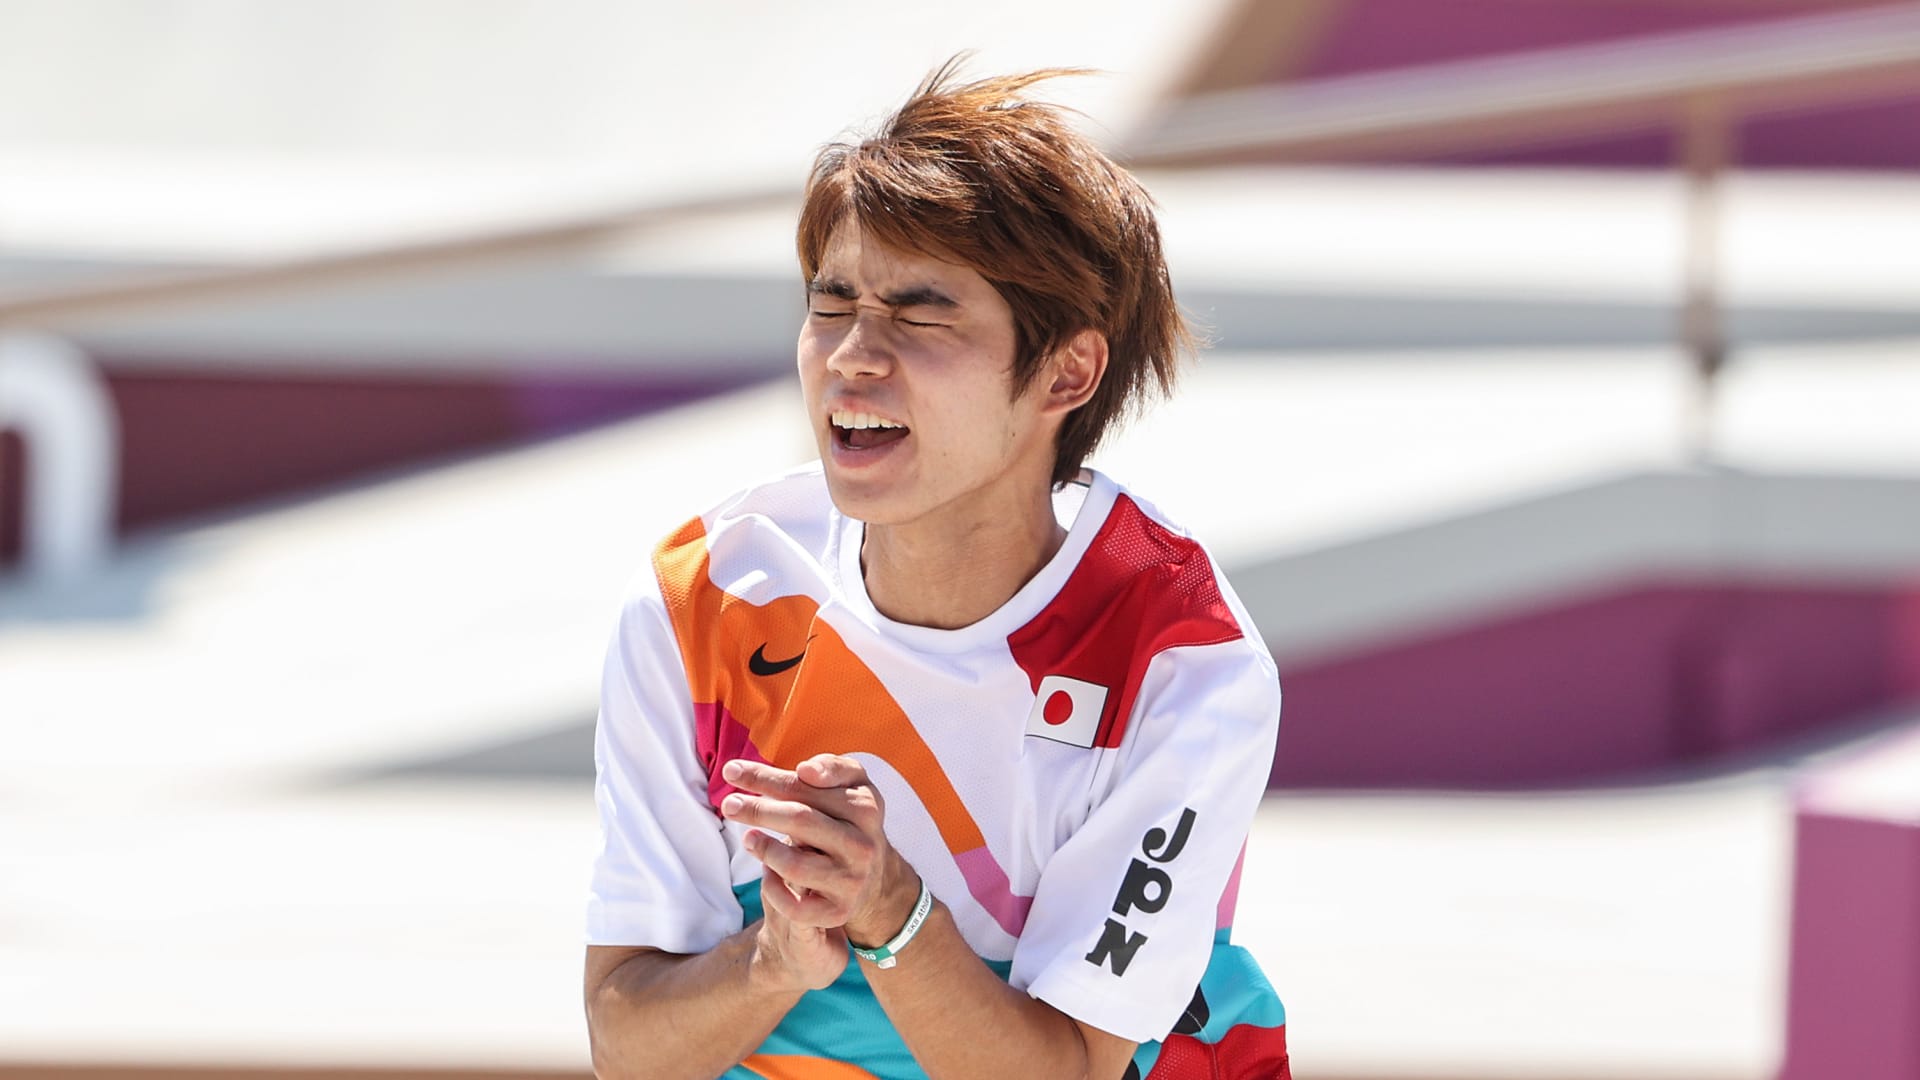 El HORIGOME Yuto de Japón gana el oro mientras el patinaje callejero hace su histórico debut olímpico